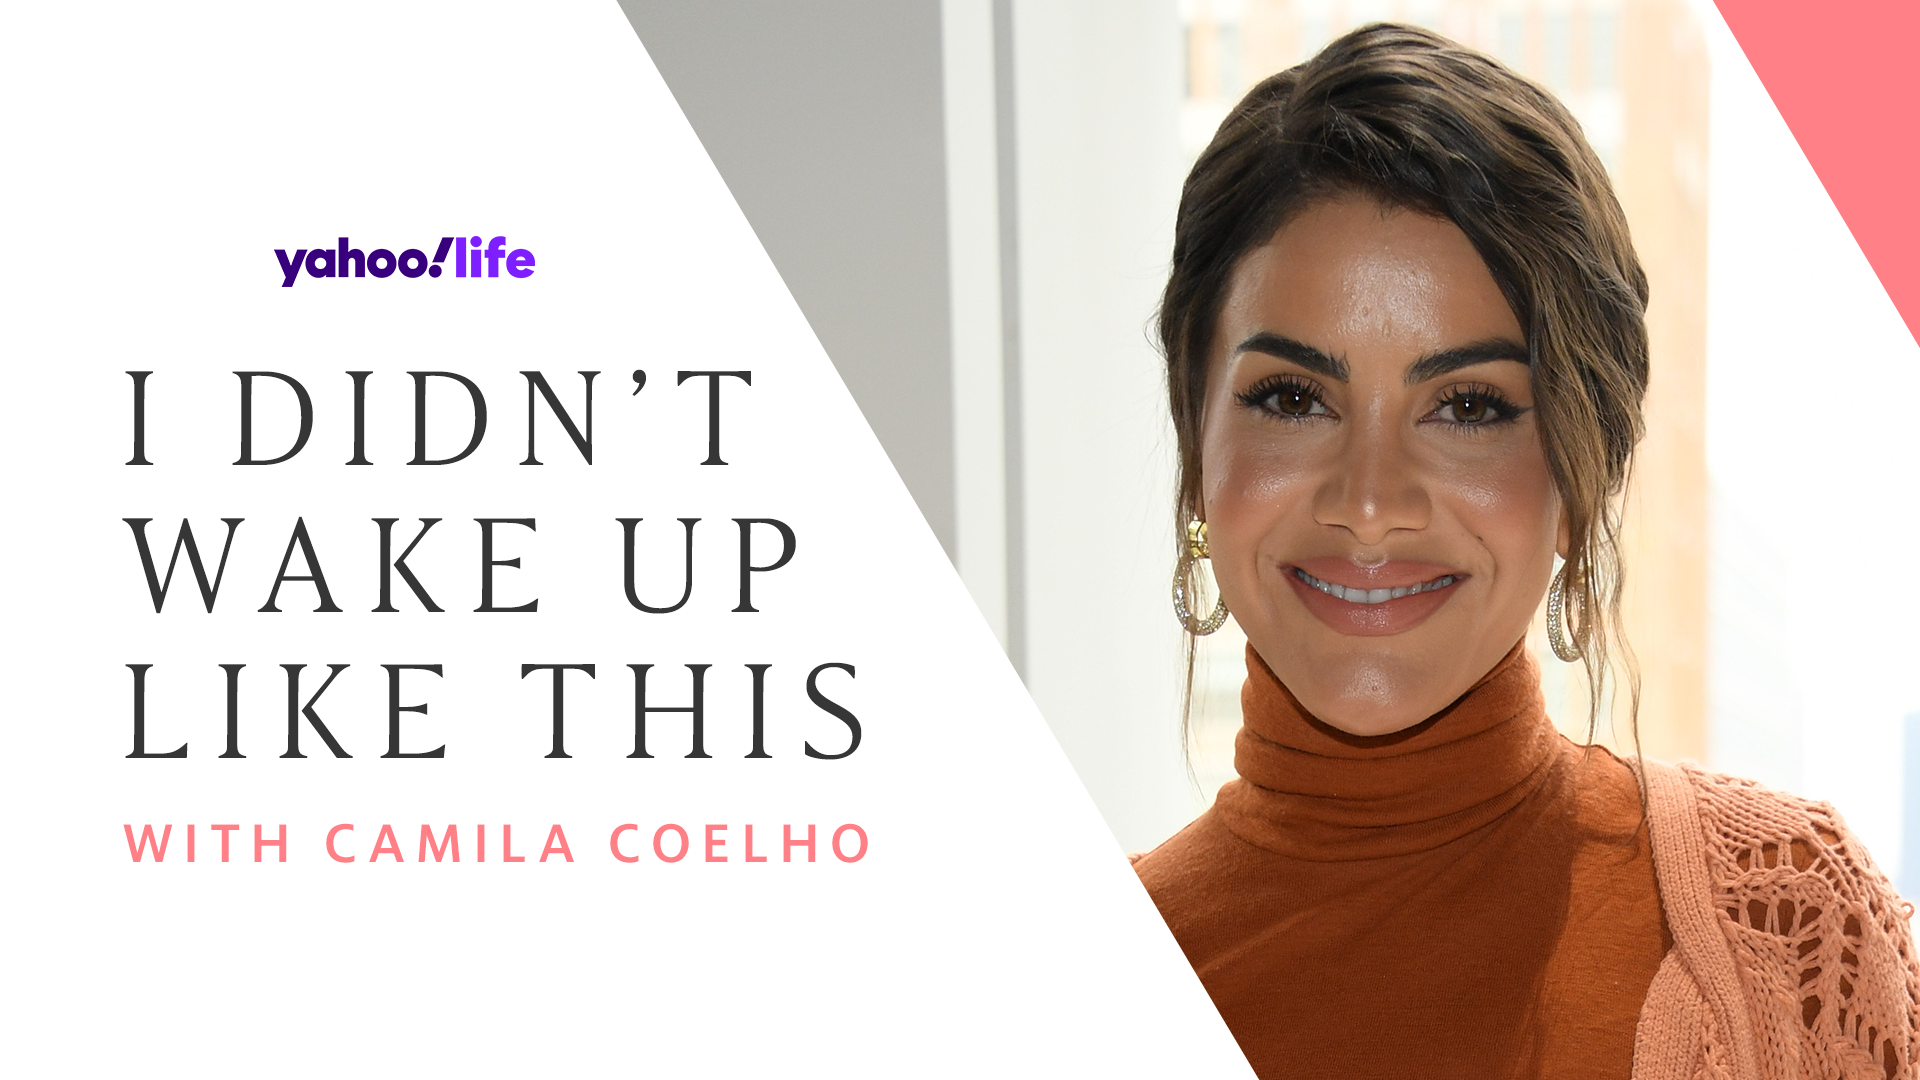 Camila Coelho shares her morning skincare care routine